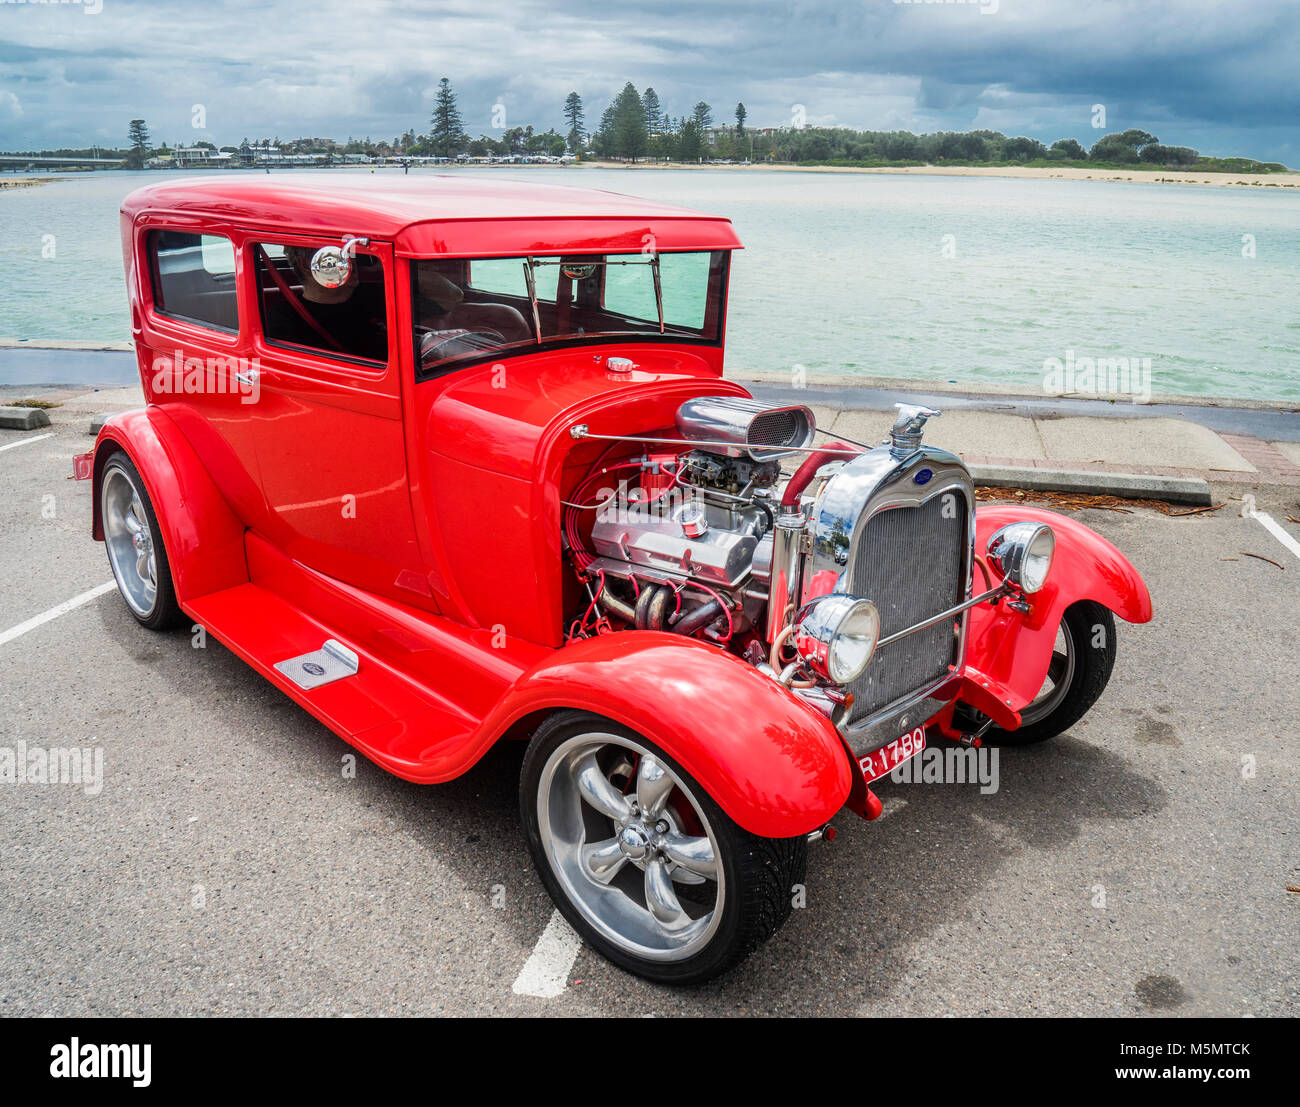 Hot Rod converti 1930 Ford modèle A, à l'entrée de la côte centrale, New South Wales, Australie Banque D'Images